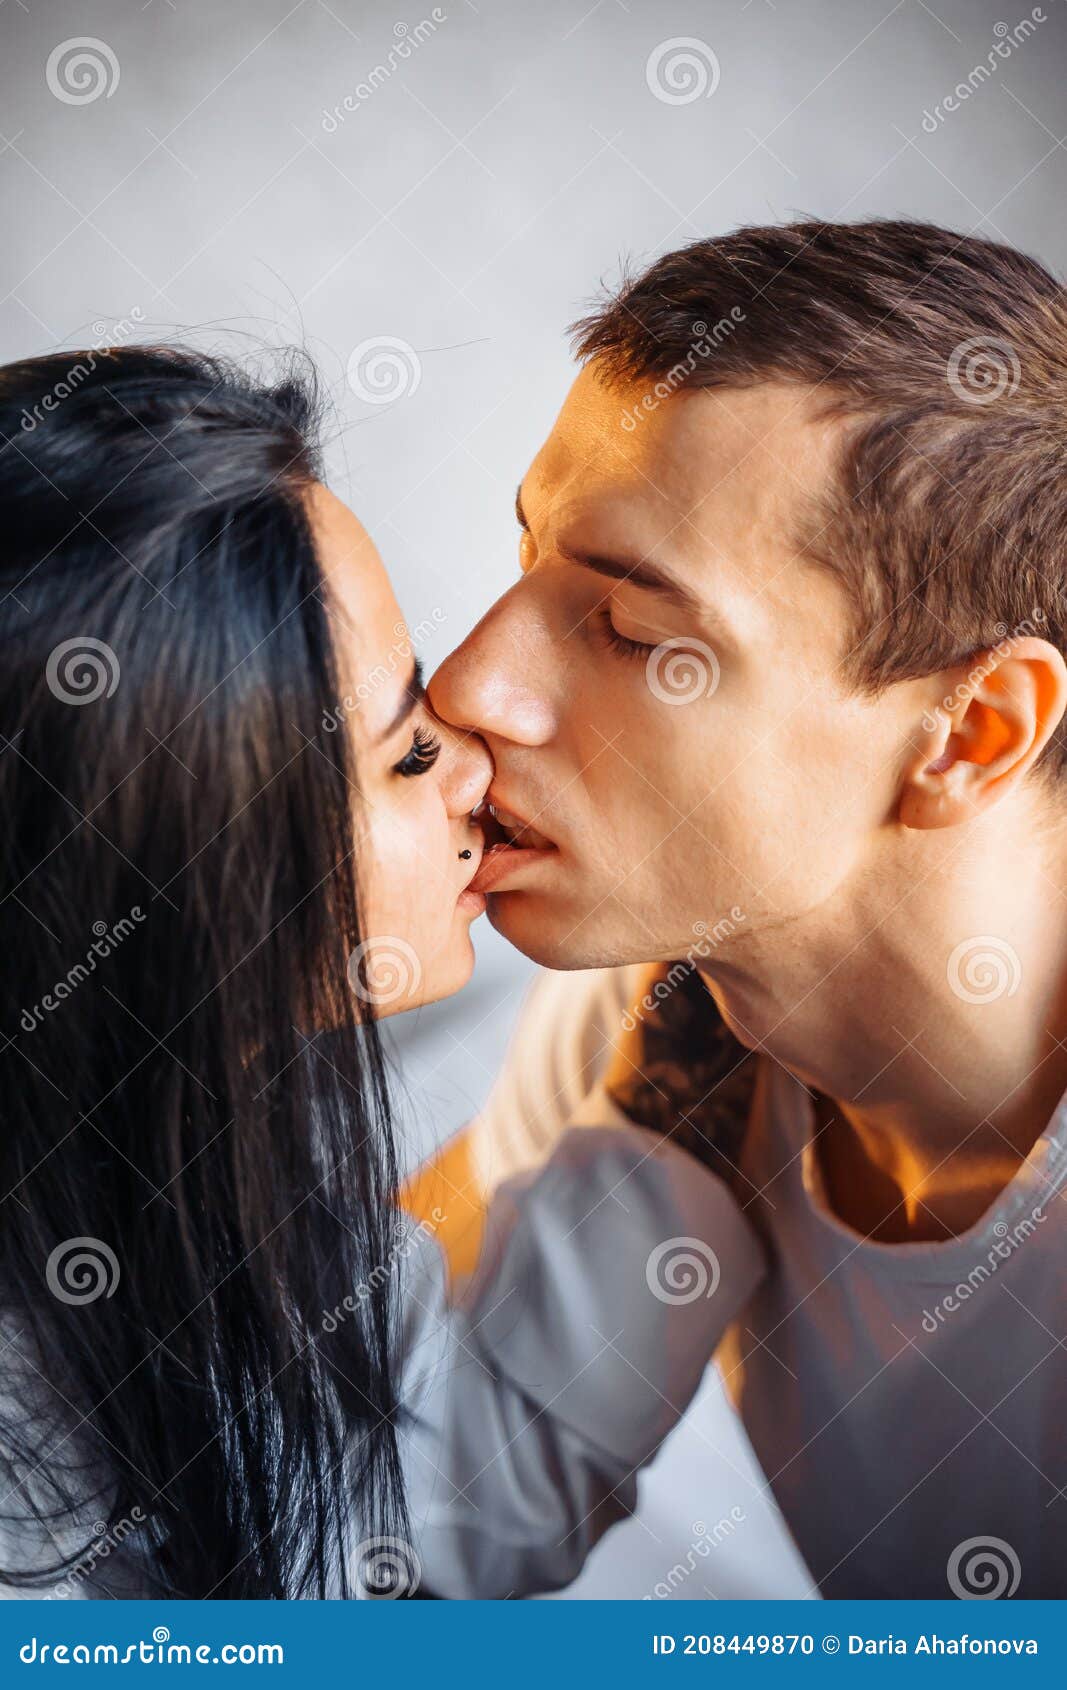 xxxx sunne leon amateur tit kissing